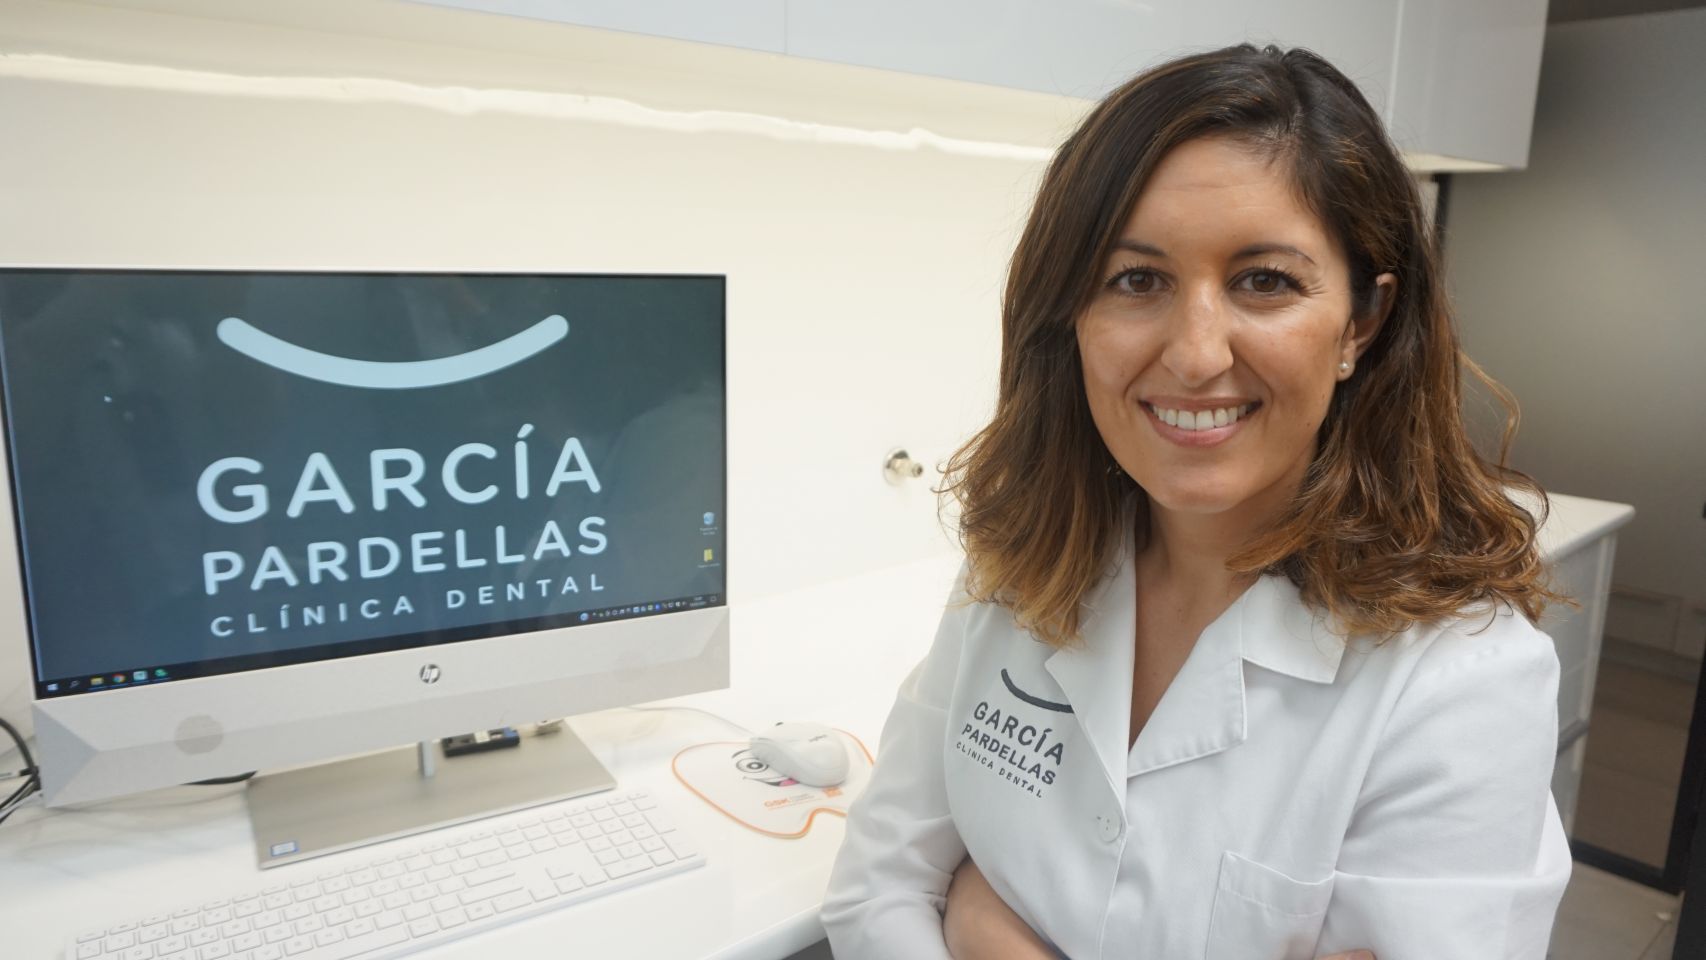 Patricia García Pardellas, odontóloga en Clínica Dental García Pardellas